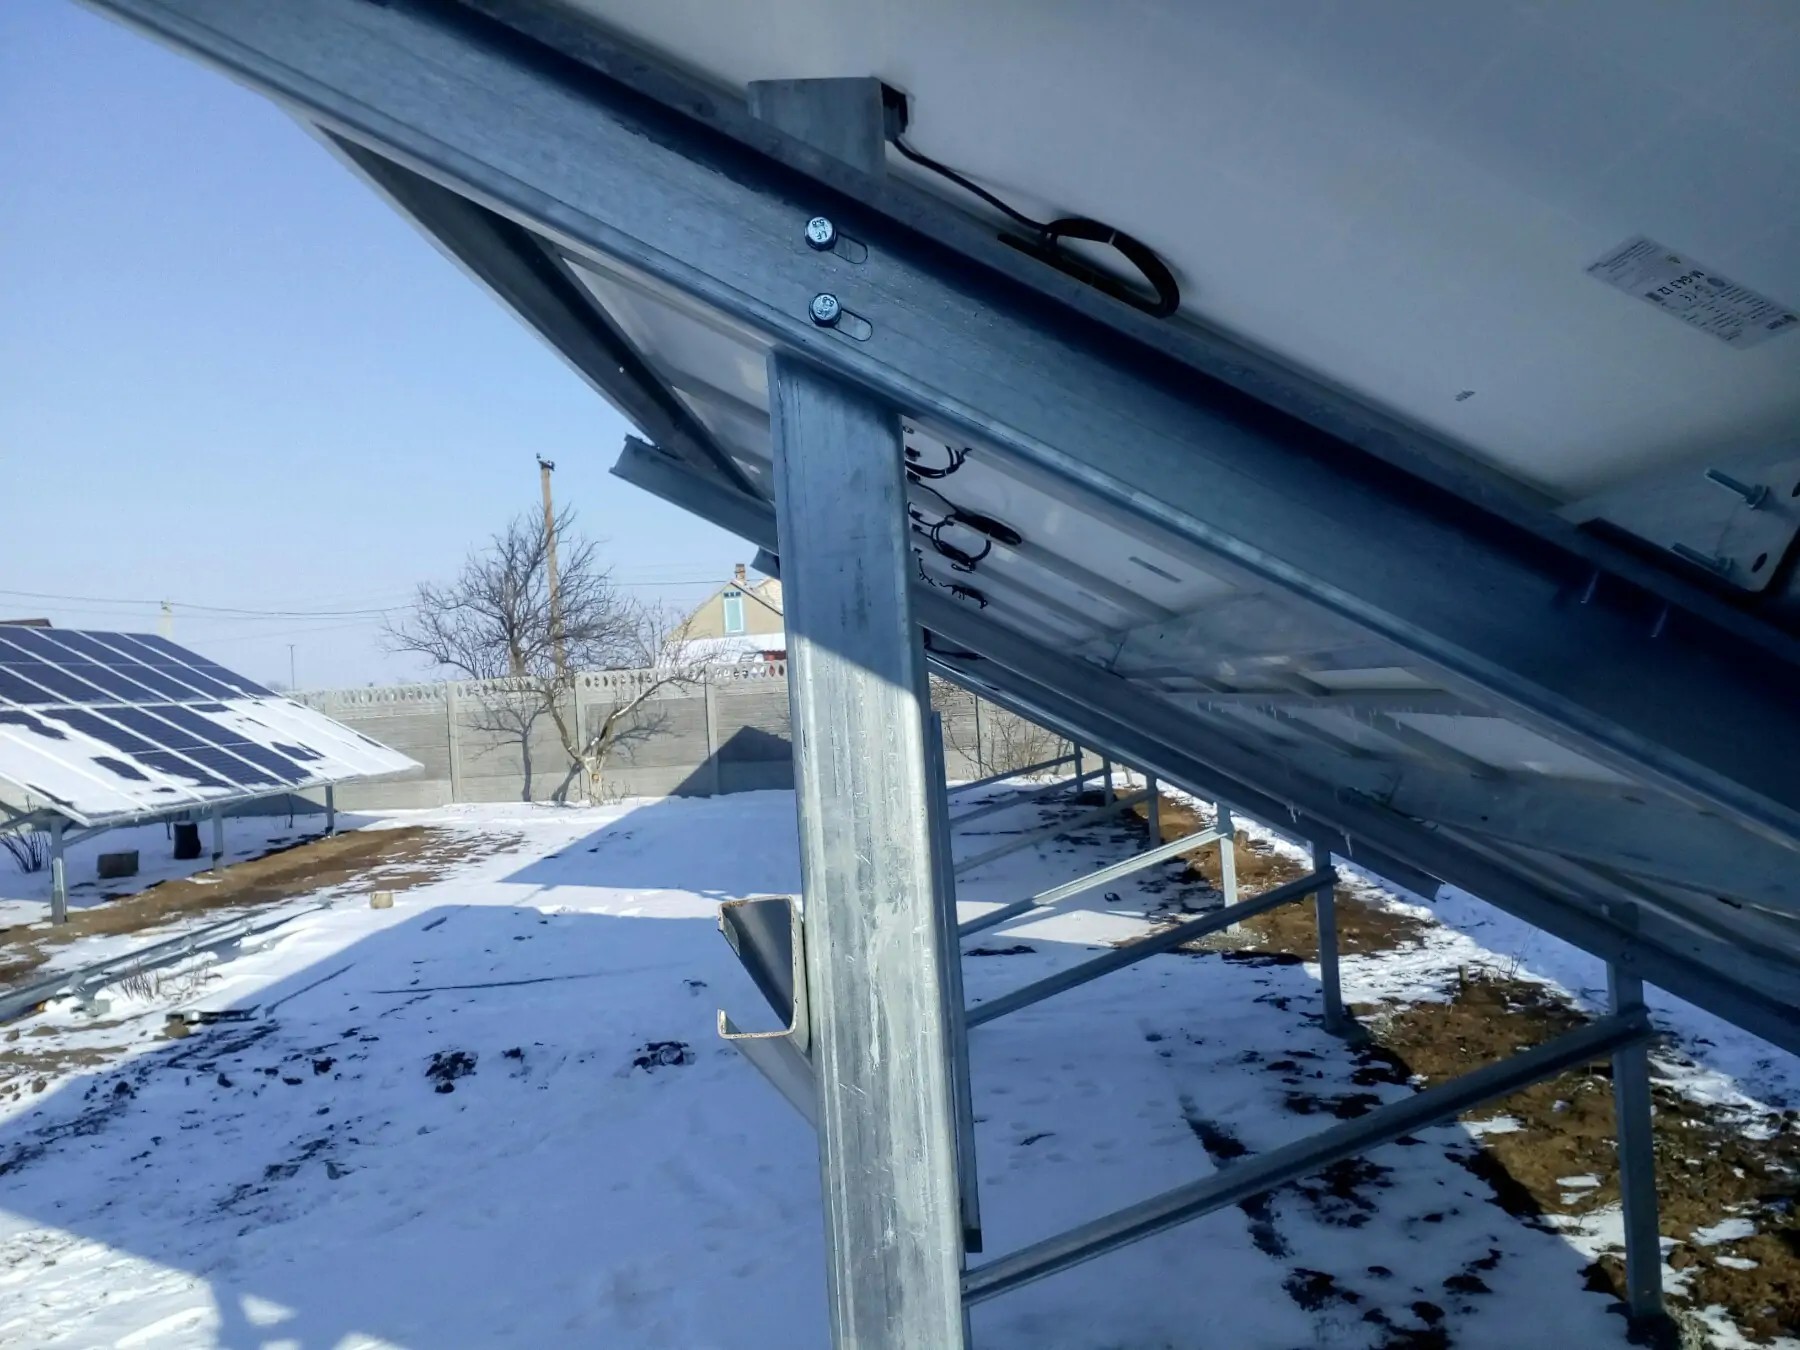 Сетевая солнечная станция пгт Новотроицкое Херсонская область 32 кВт